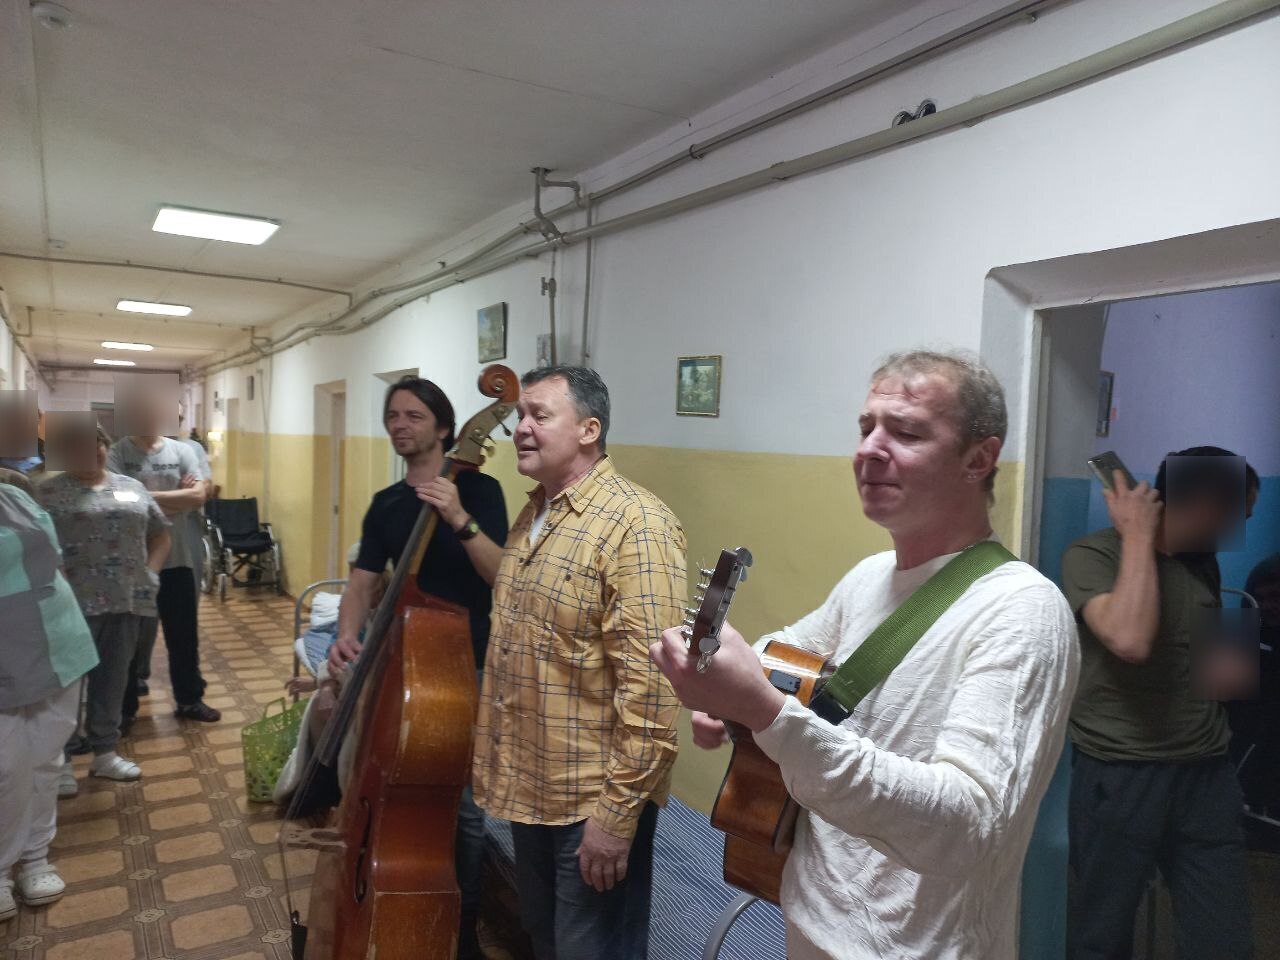 Участники проекта «Актеры Нижнего – Донбассу» выступают с концертами в нижегородских госпиталях